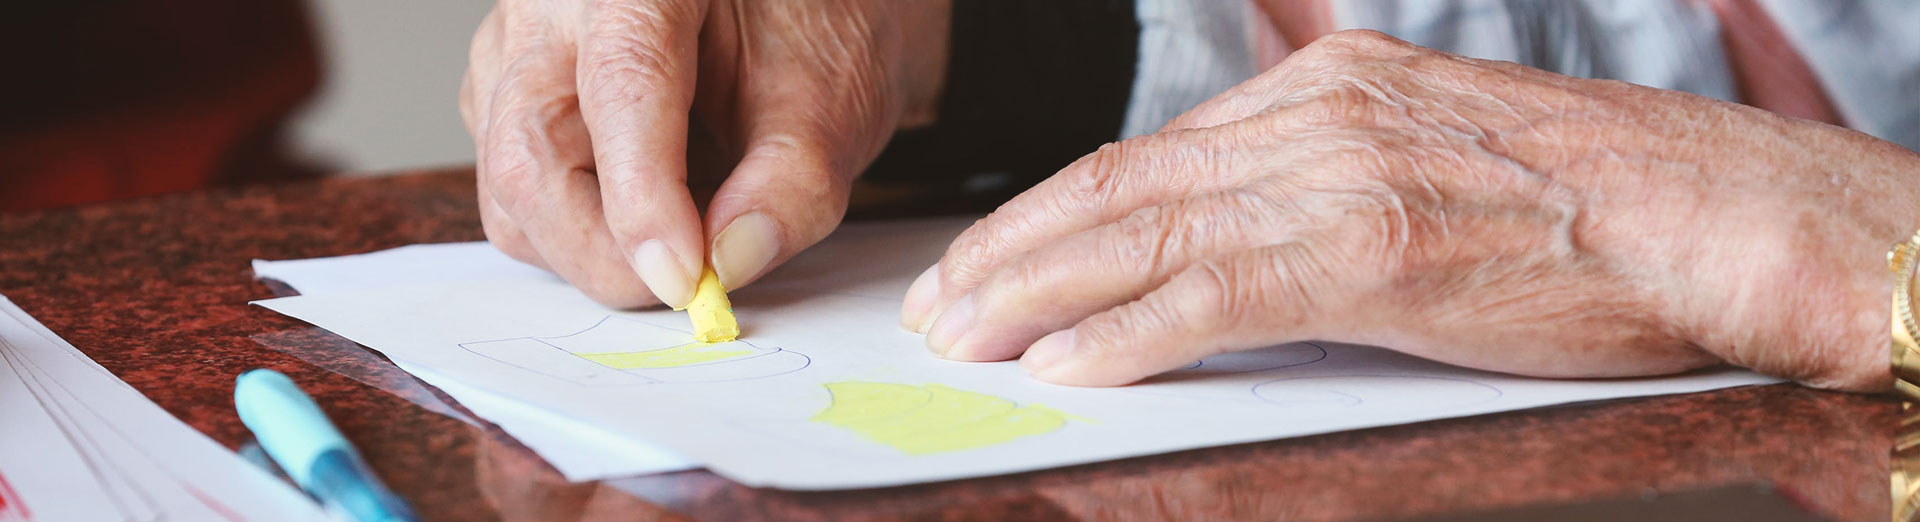 Hände einer Frau beim Malen mit Wachsmalstiften